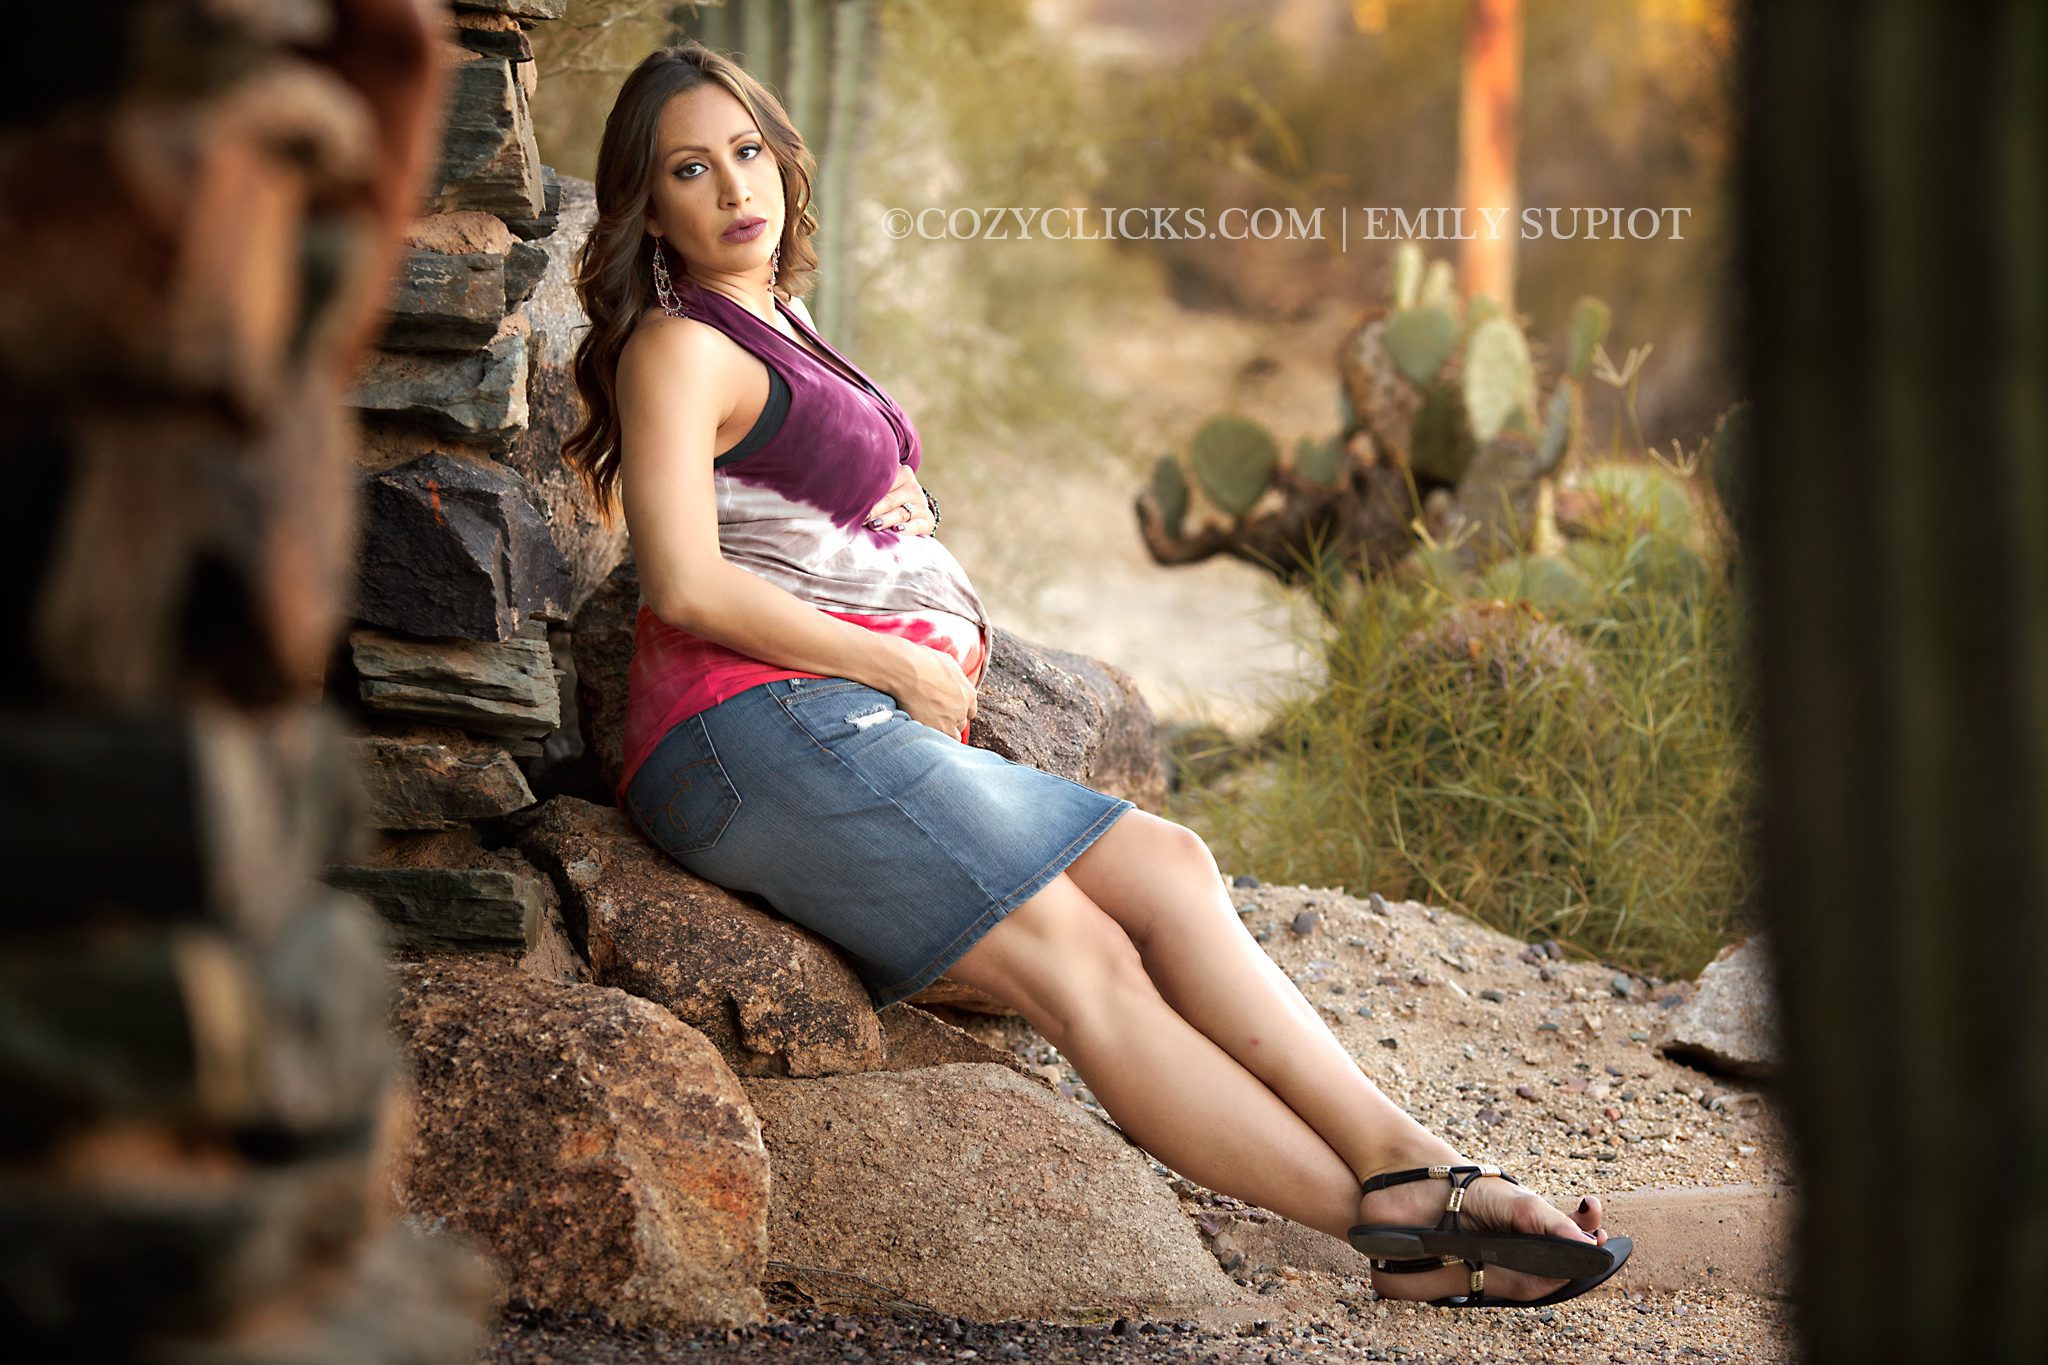 Maternity photography at South Mountain in Phoenix Arizona near Ahwatukee